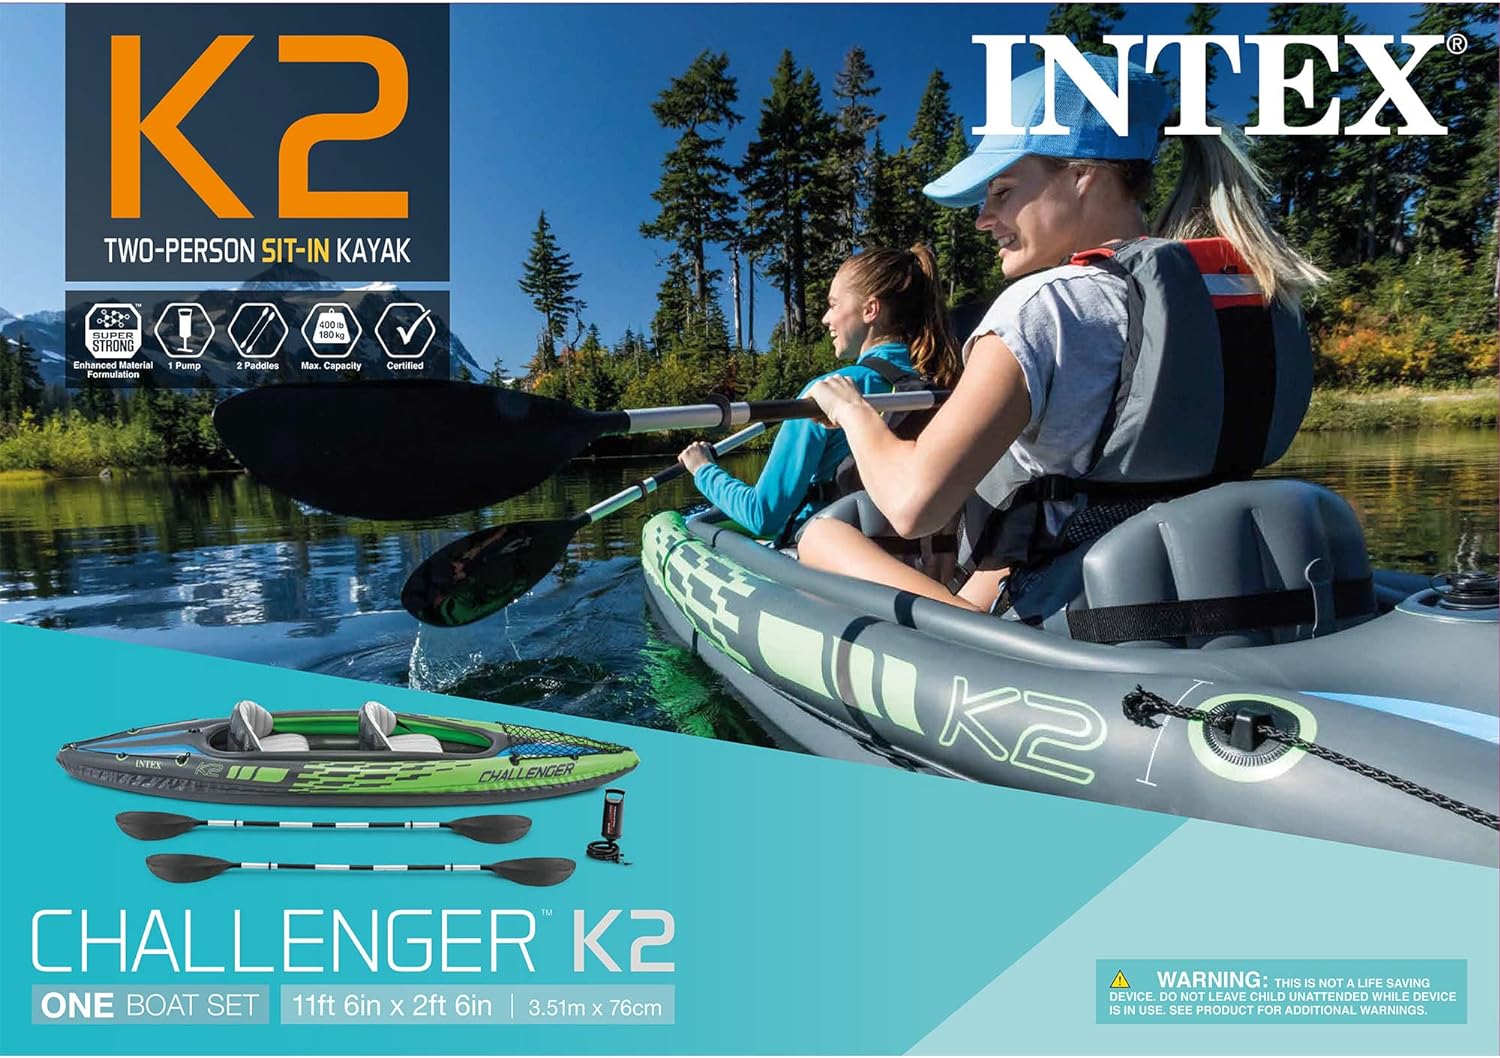 INTEX CHALLENGER K2 KAYAK PACKAGE